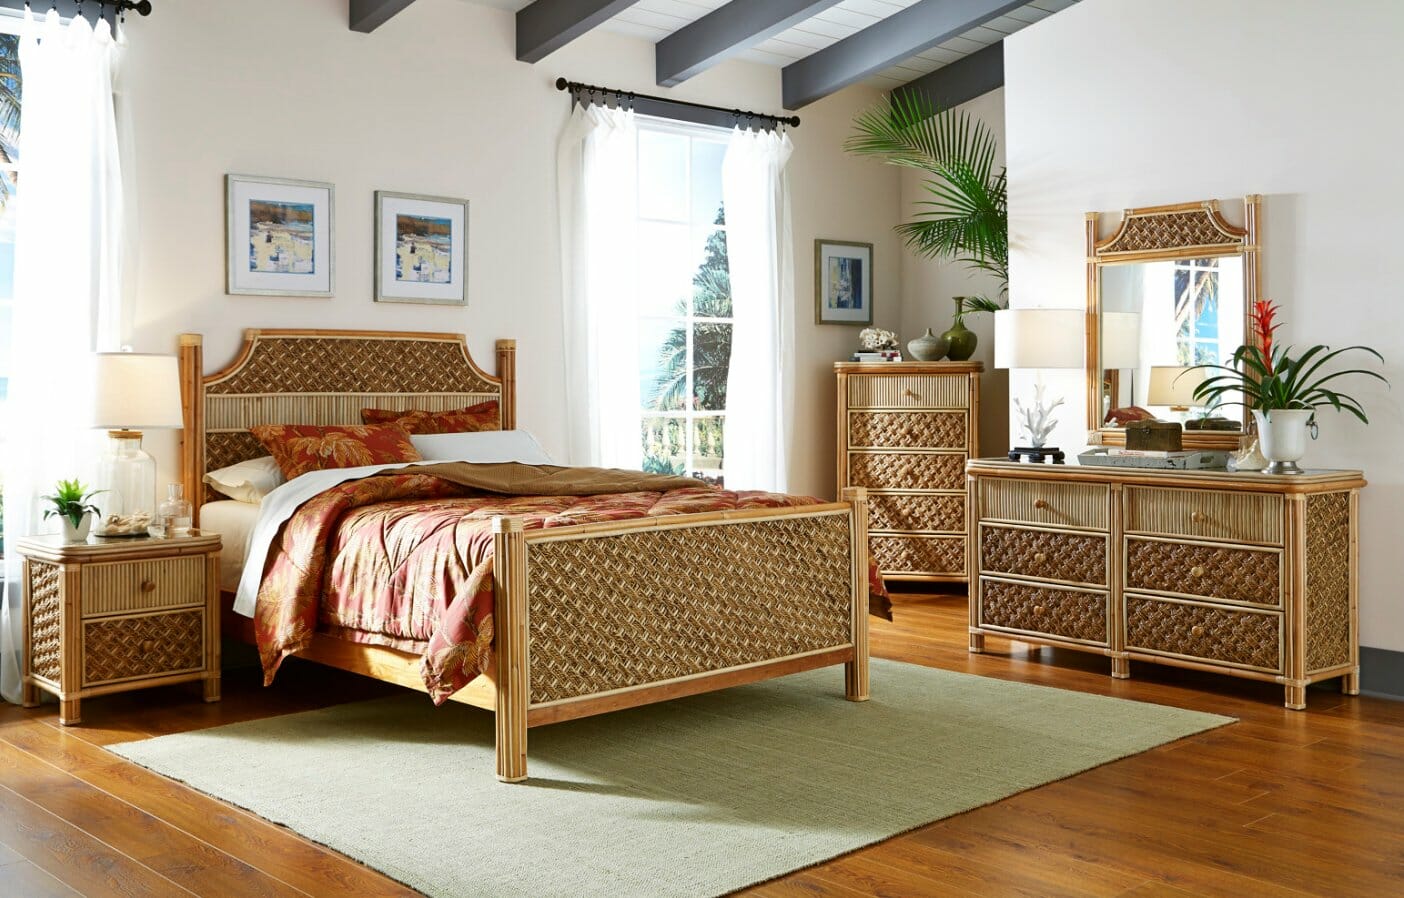 sea island bedroom furniture